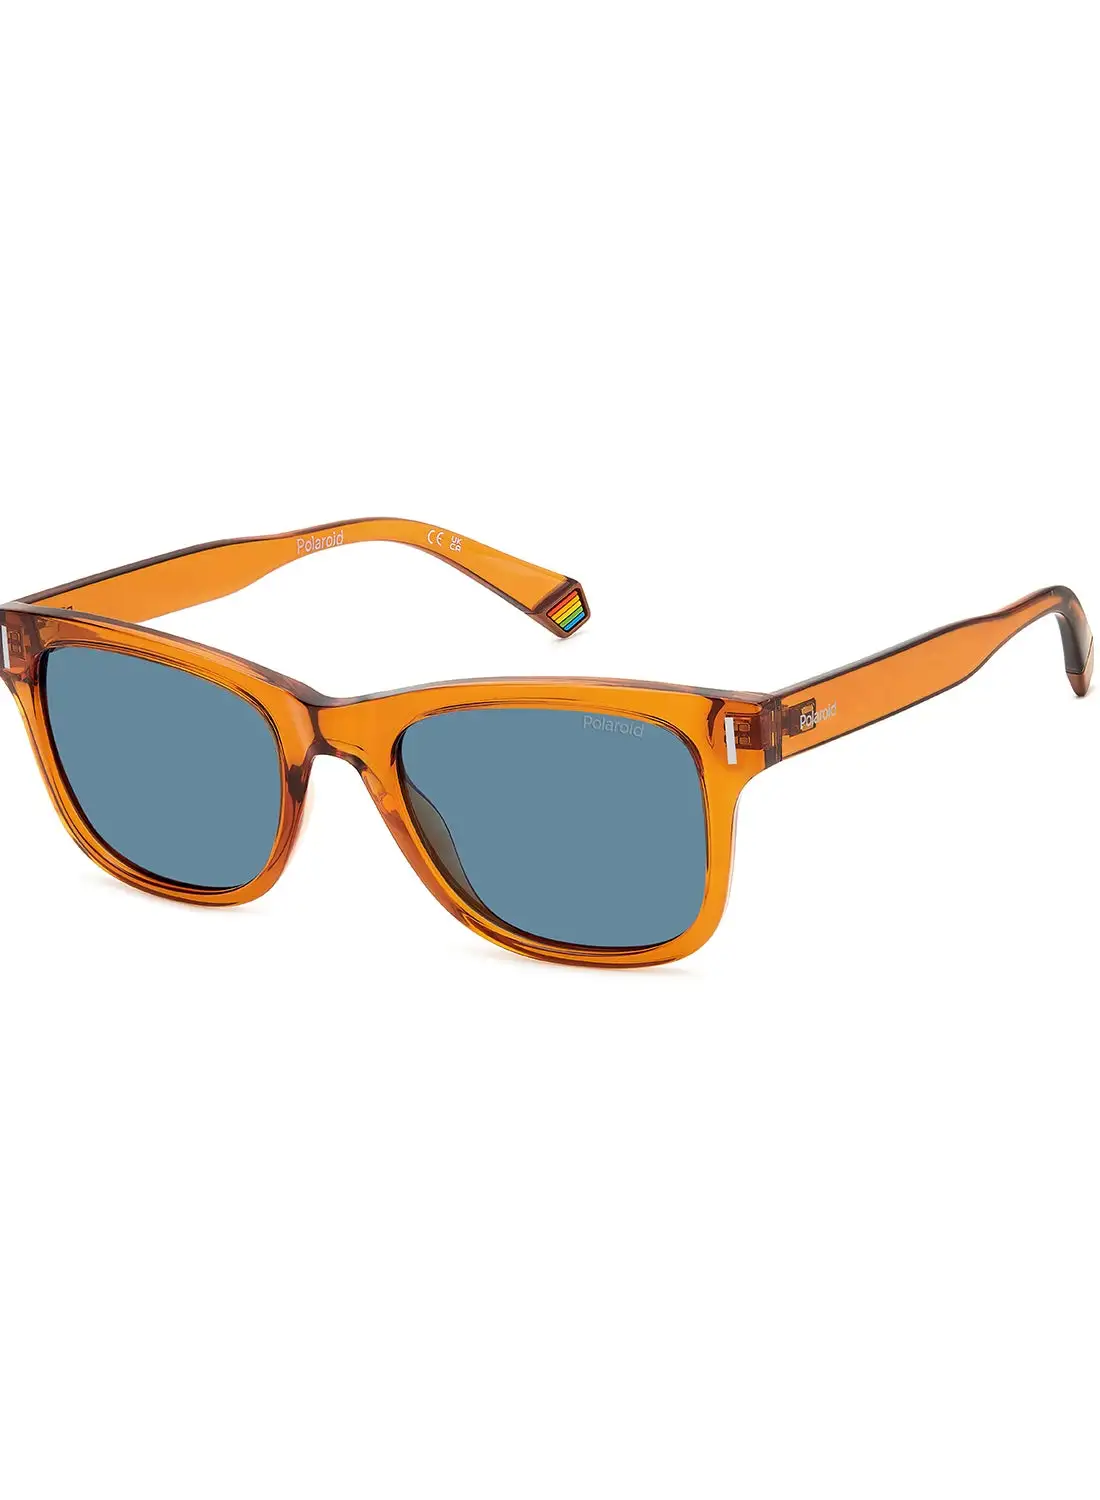 Polaroid Unisex Polarized Rectangular Sunglasses - Pld 6206/S Orange Millimeter - Lens Size: 51 Mm